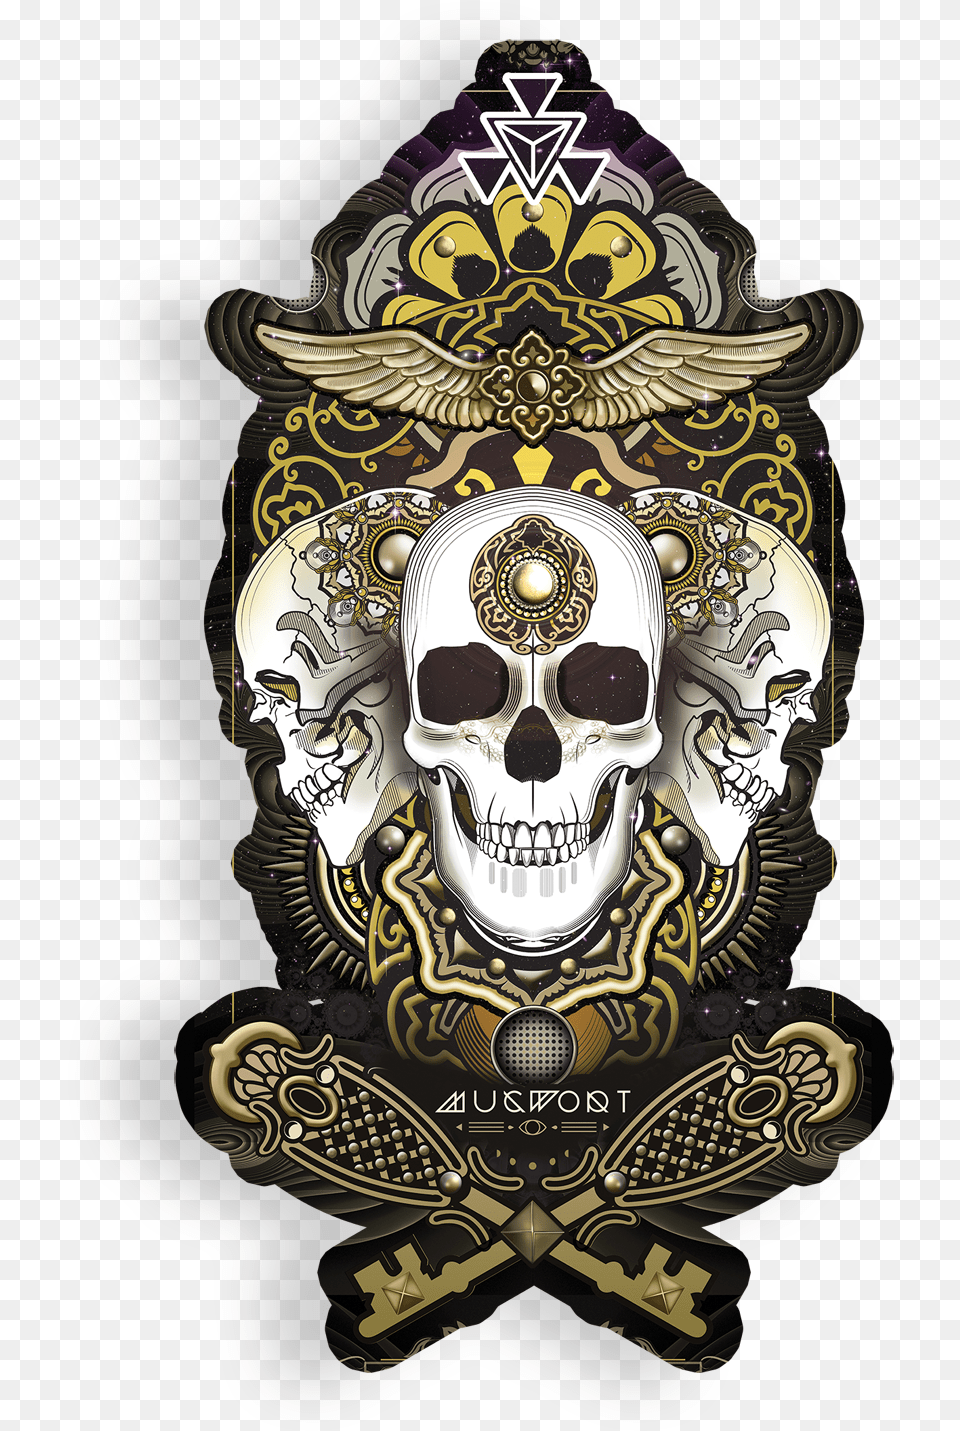 Sky Pirate Sticker Illustration, Emblem, Symbol, Adult, Bride Free Transparent Png